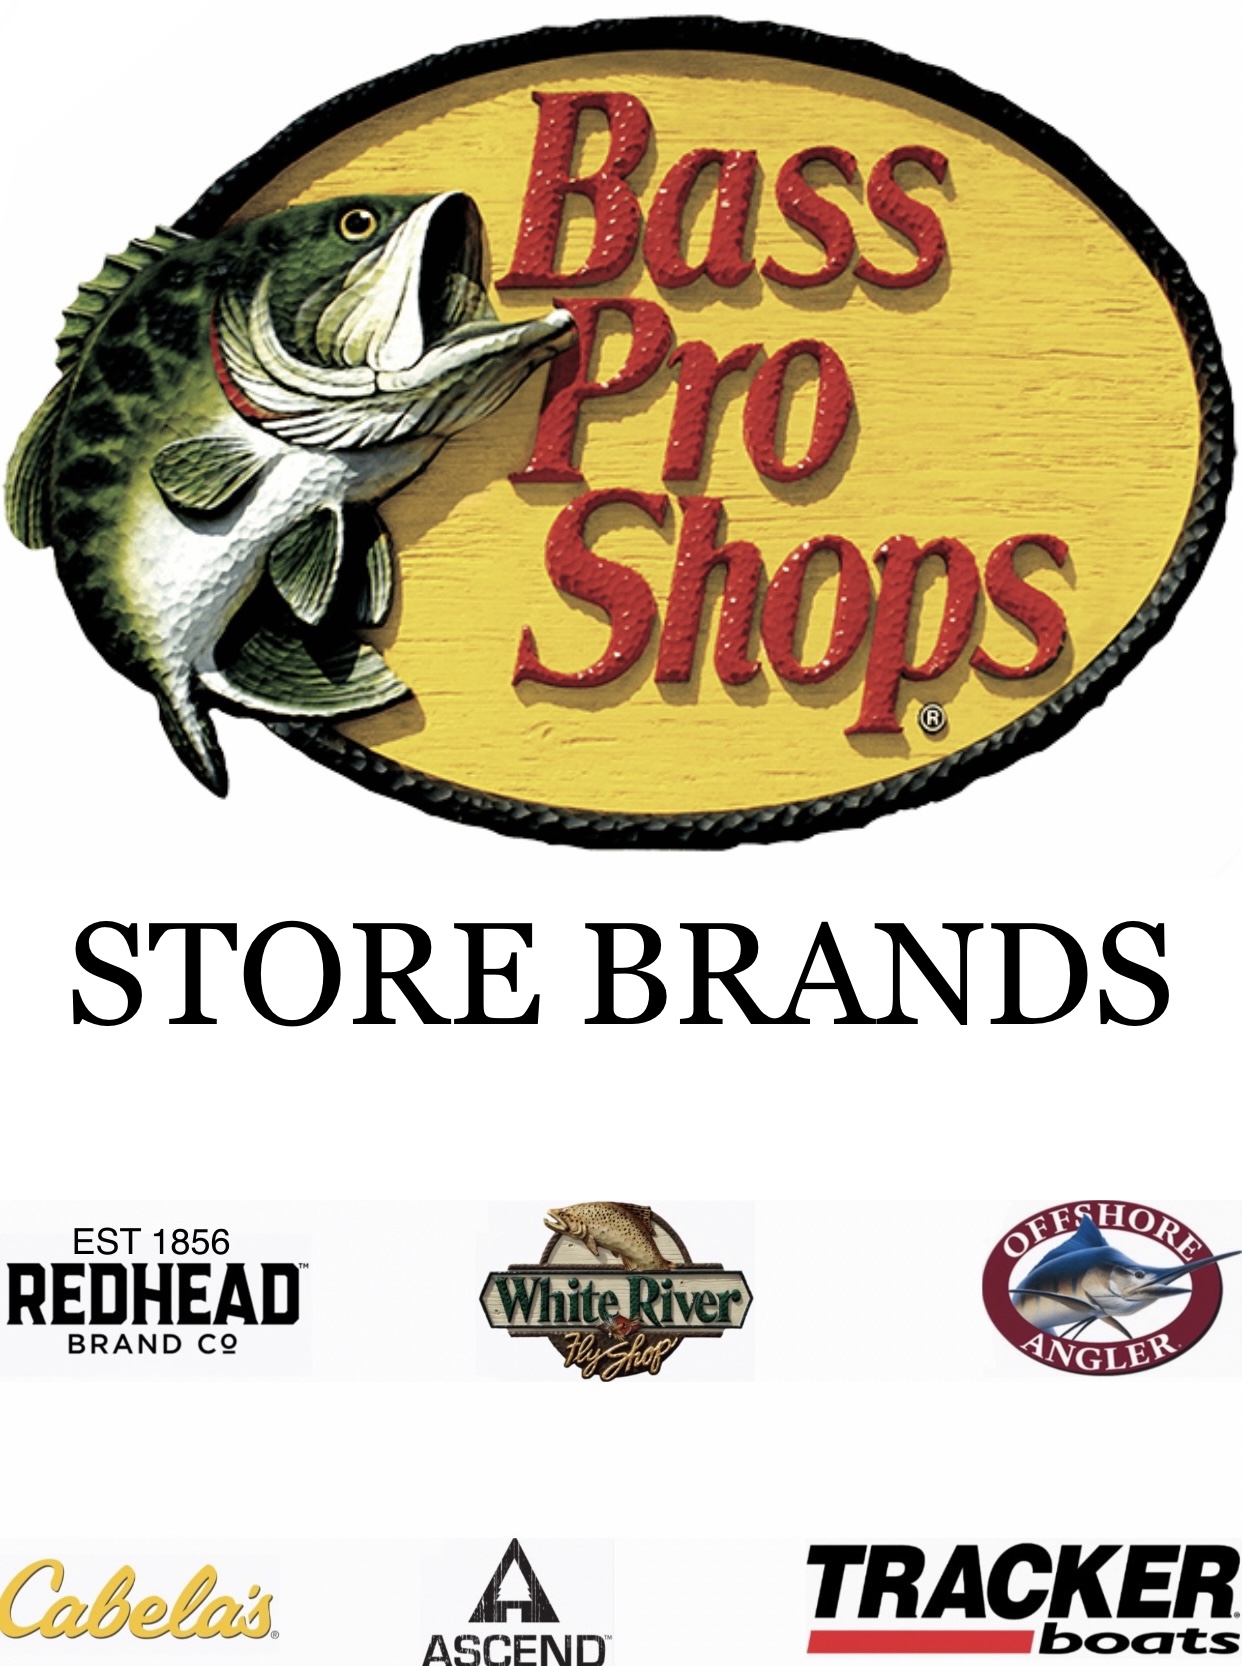 Bass Pro Shops Store Brands by ASBal2002 on DeviantArt